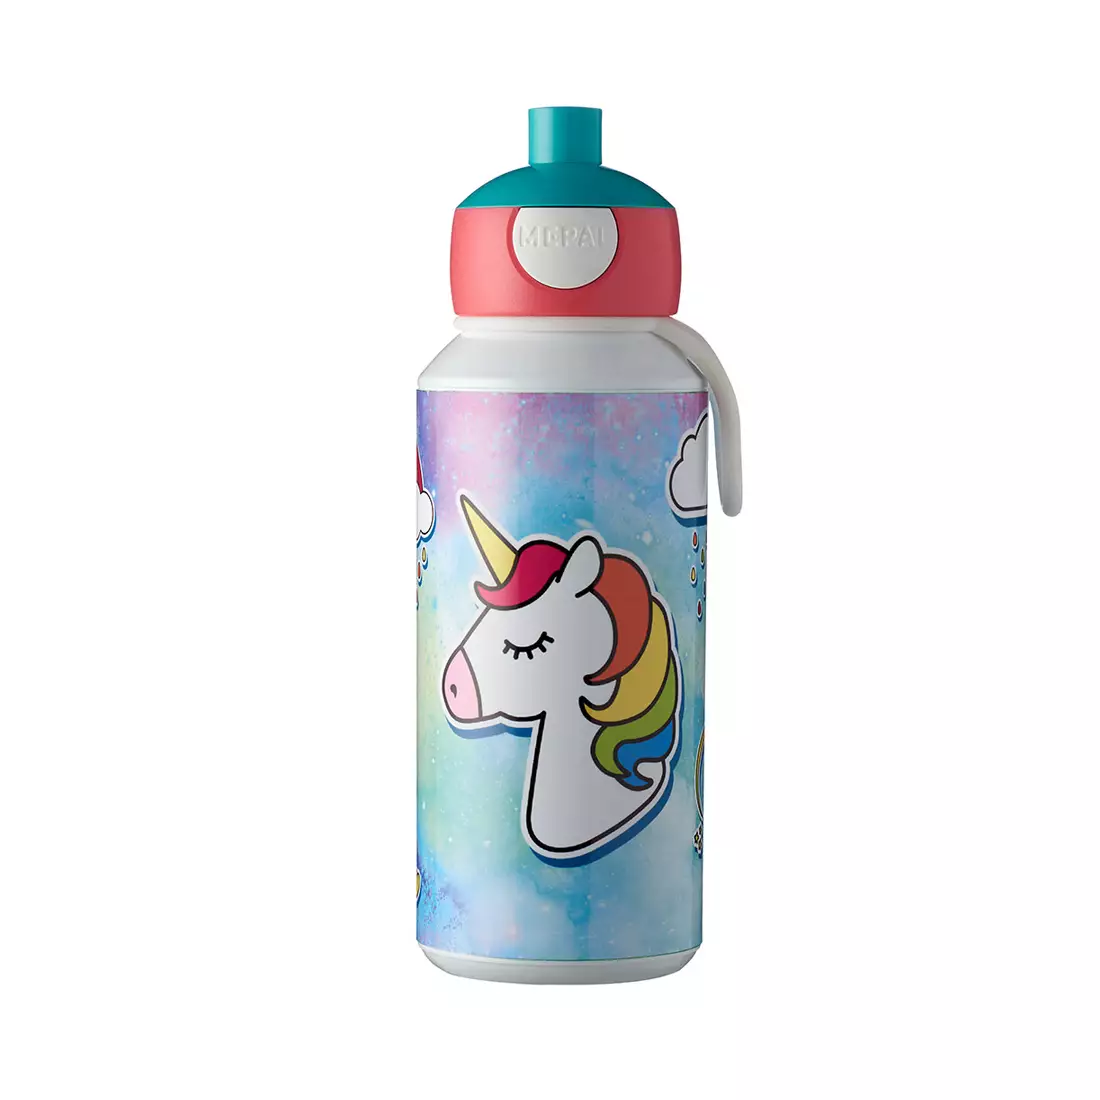 MEPAL CAMPUS POP UP fľaša na vodu pre deti 400ml Unicorn